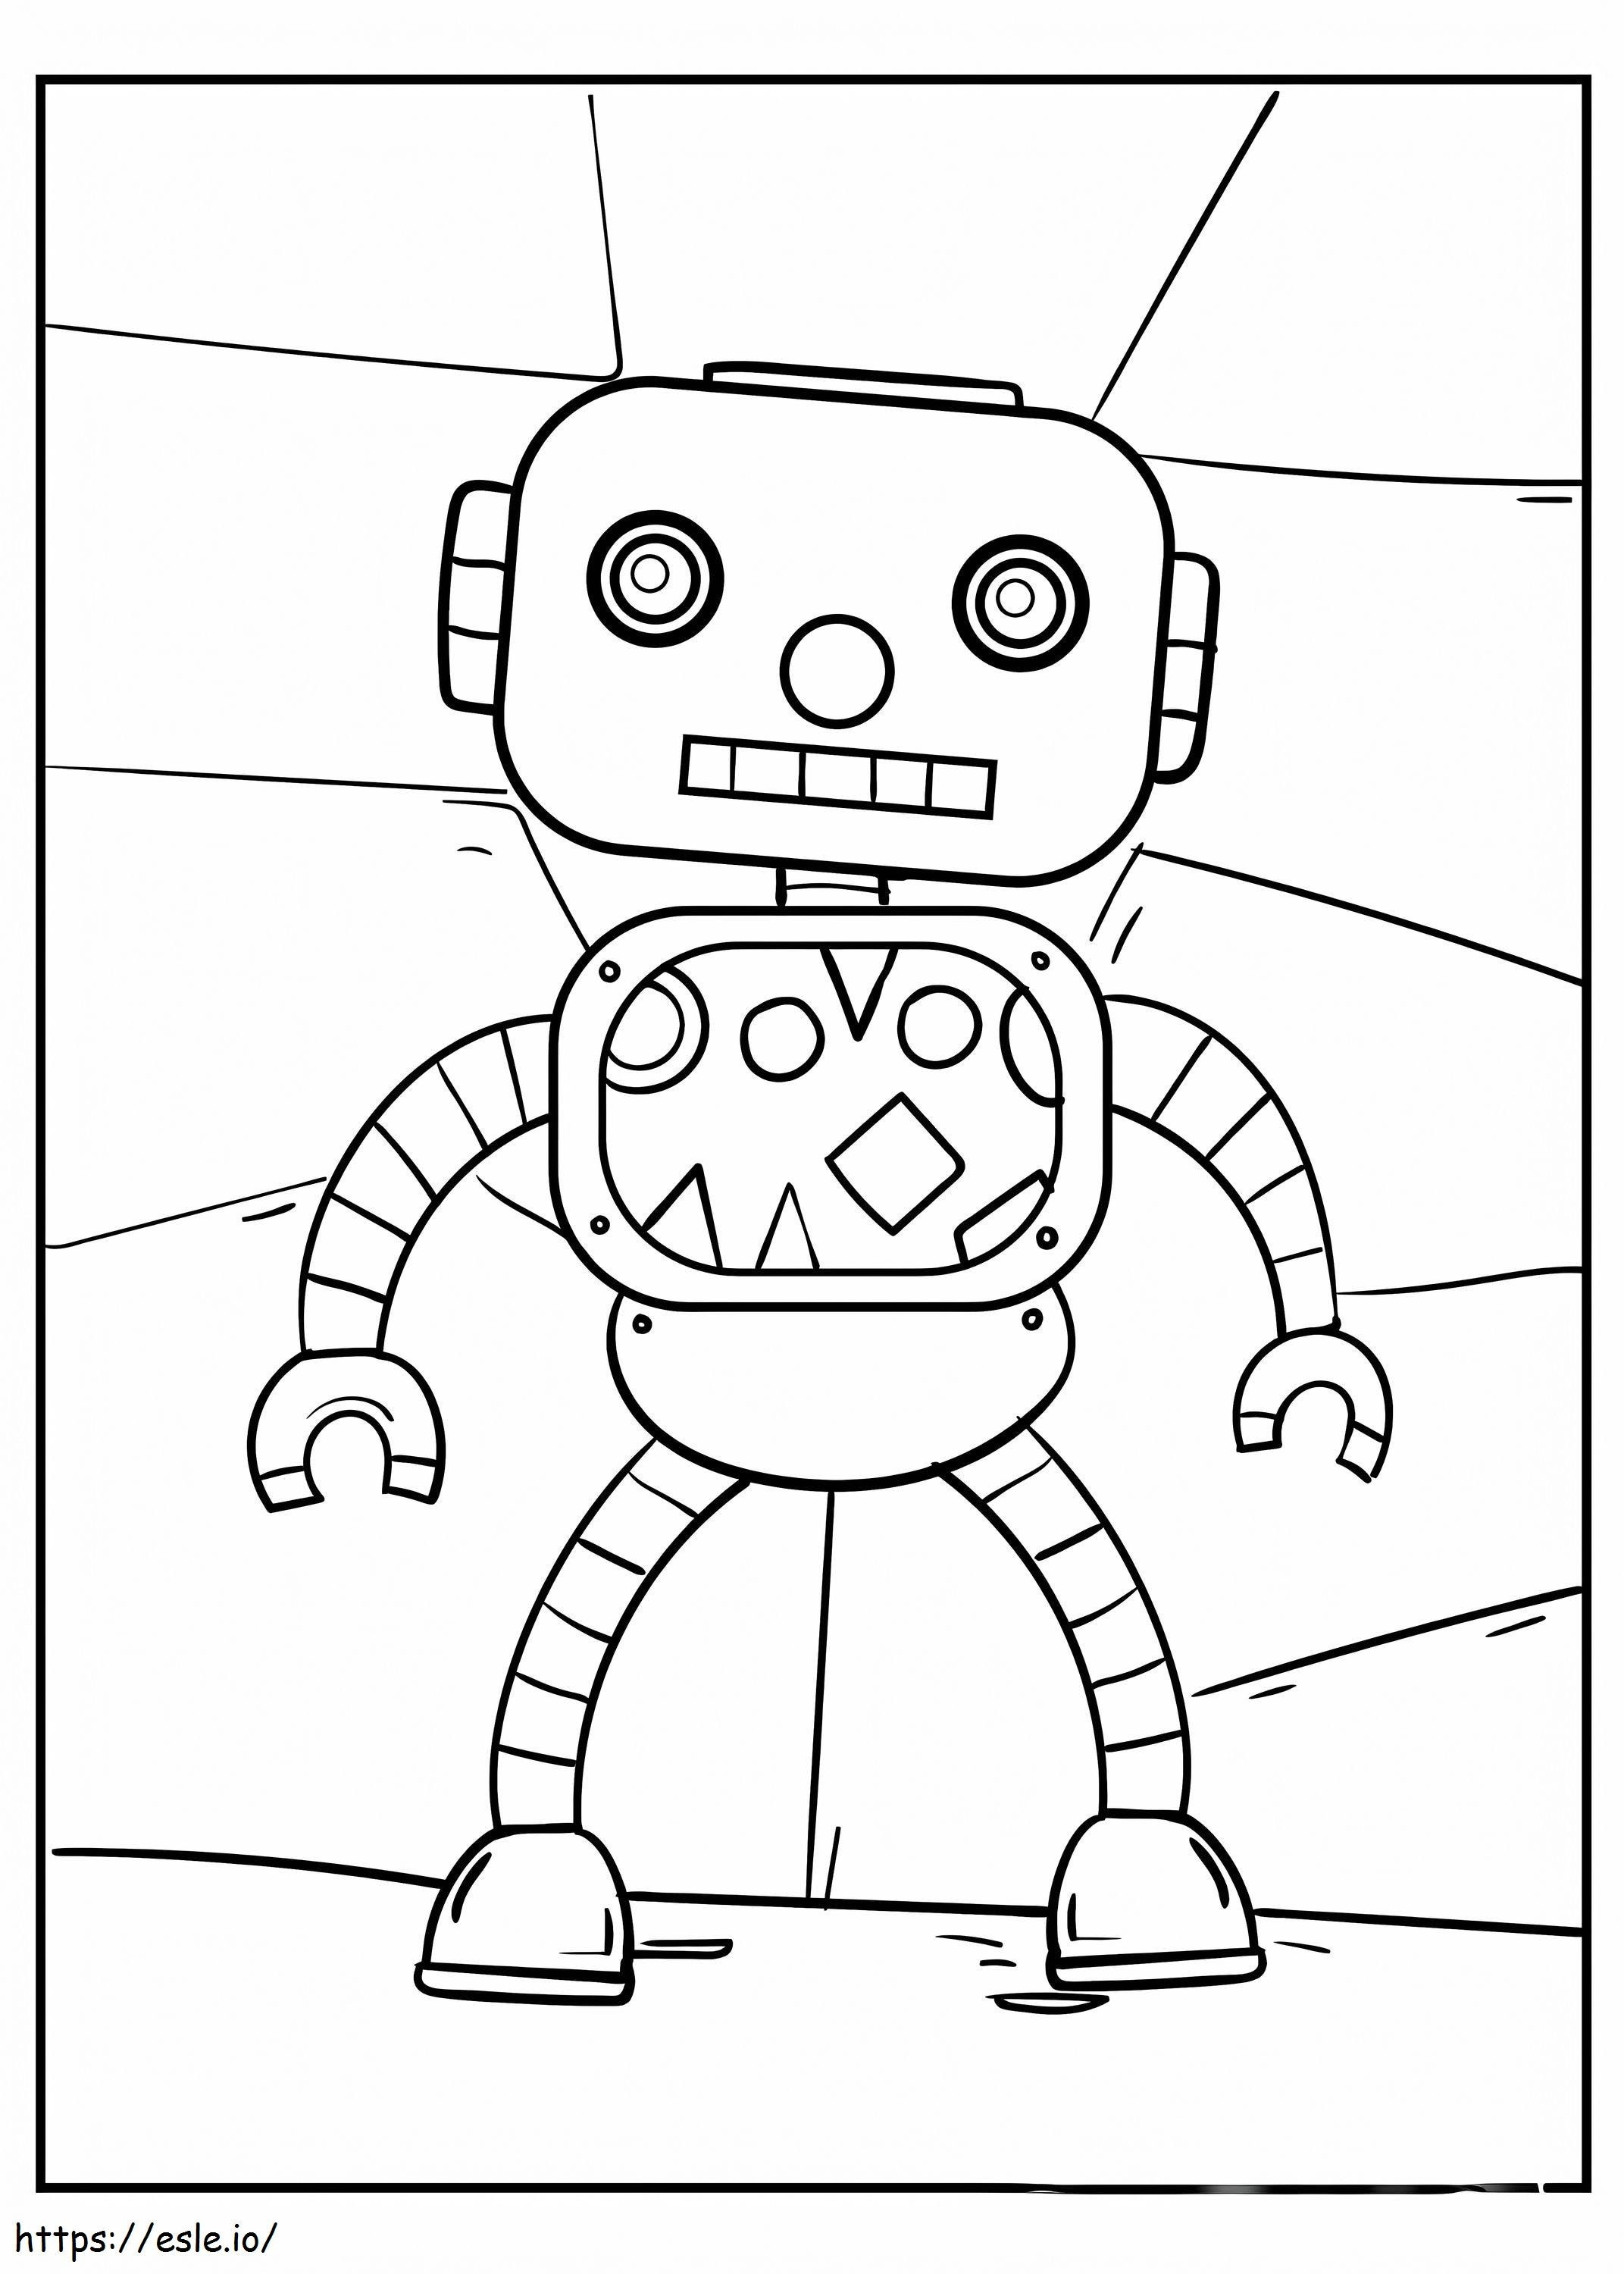 Robot Kind kleurplaat kleurplaat